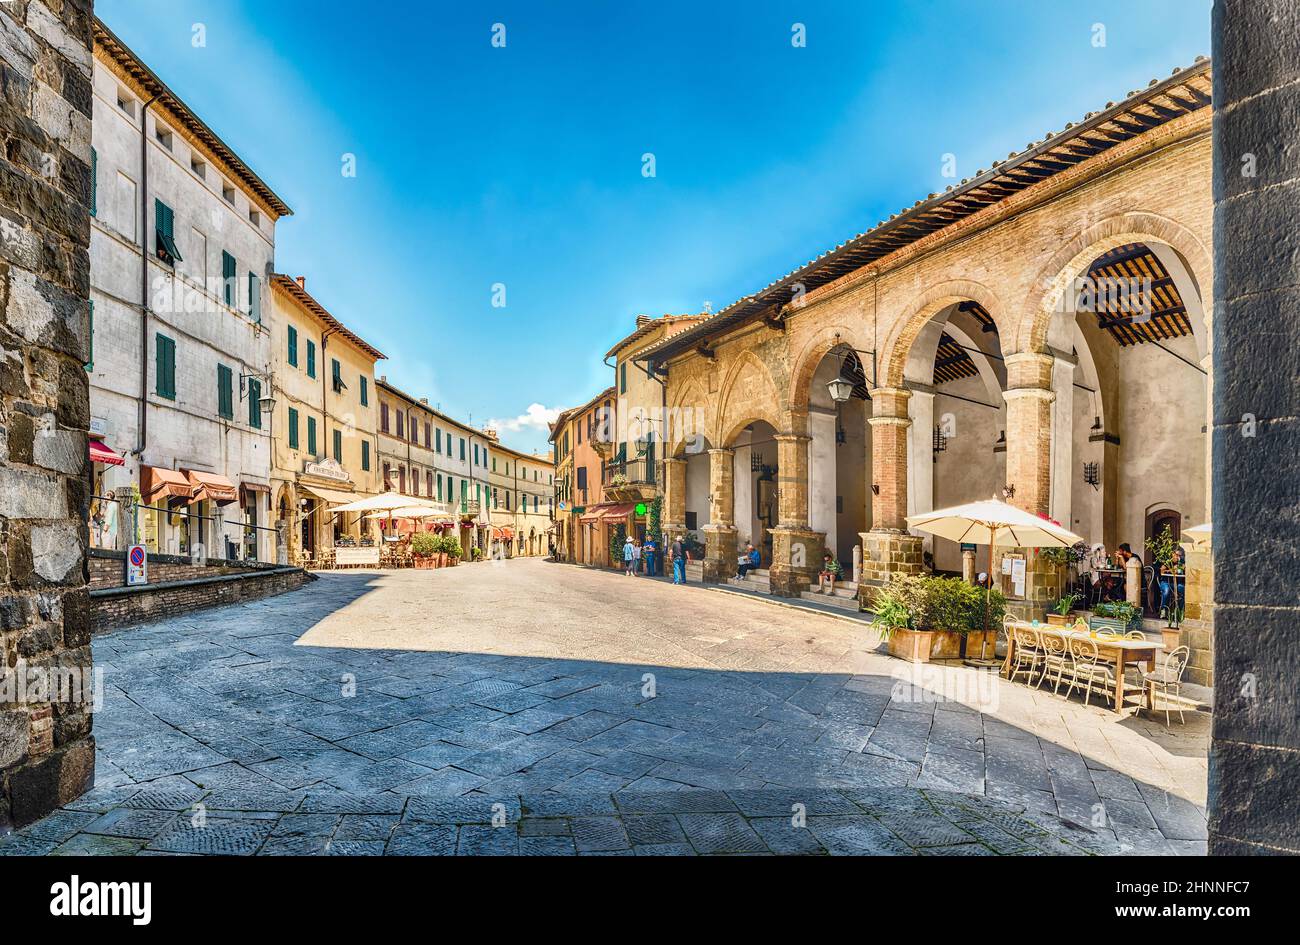 Le pittoresche vie medievali di Montalcino, provincia di Siena, Italia Foto Stock